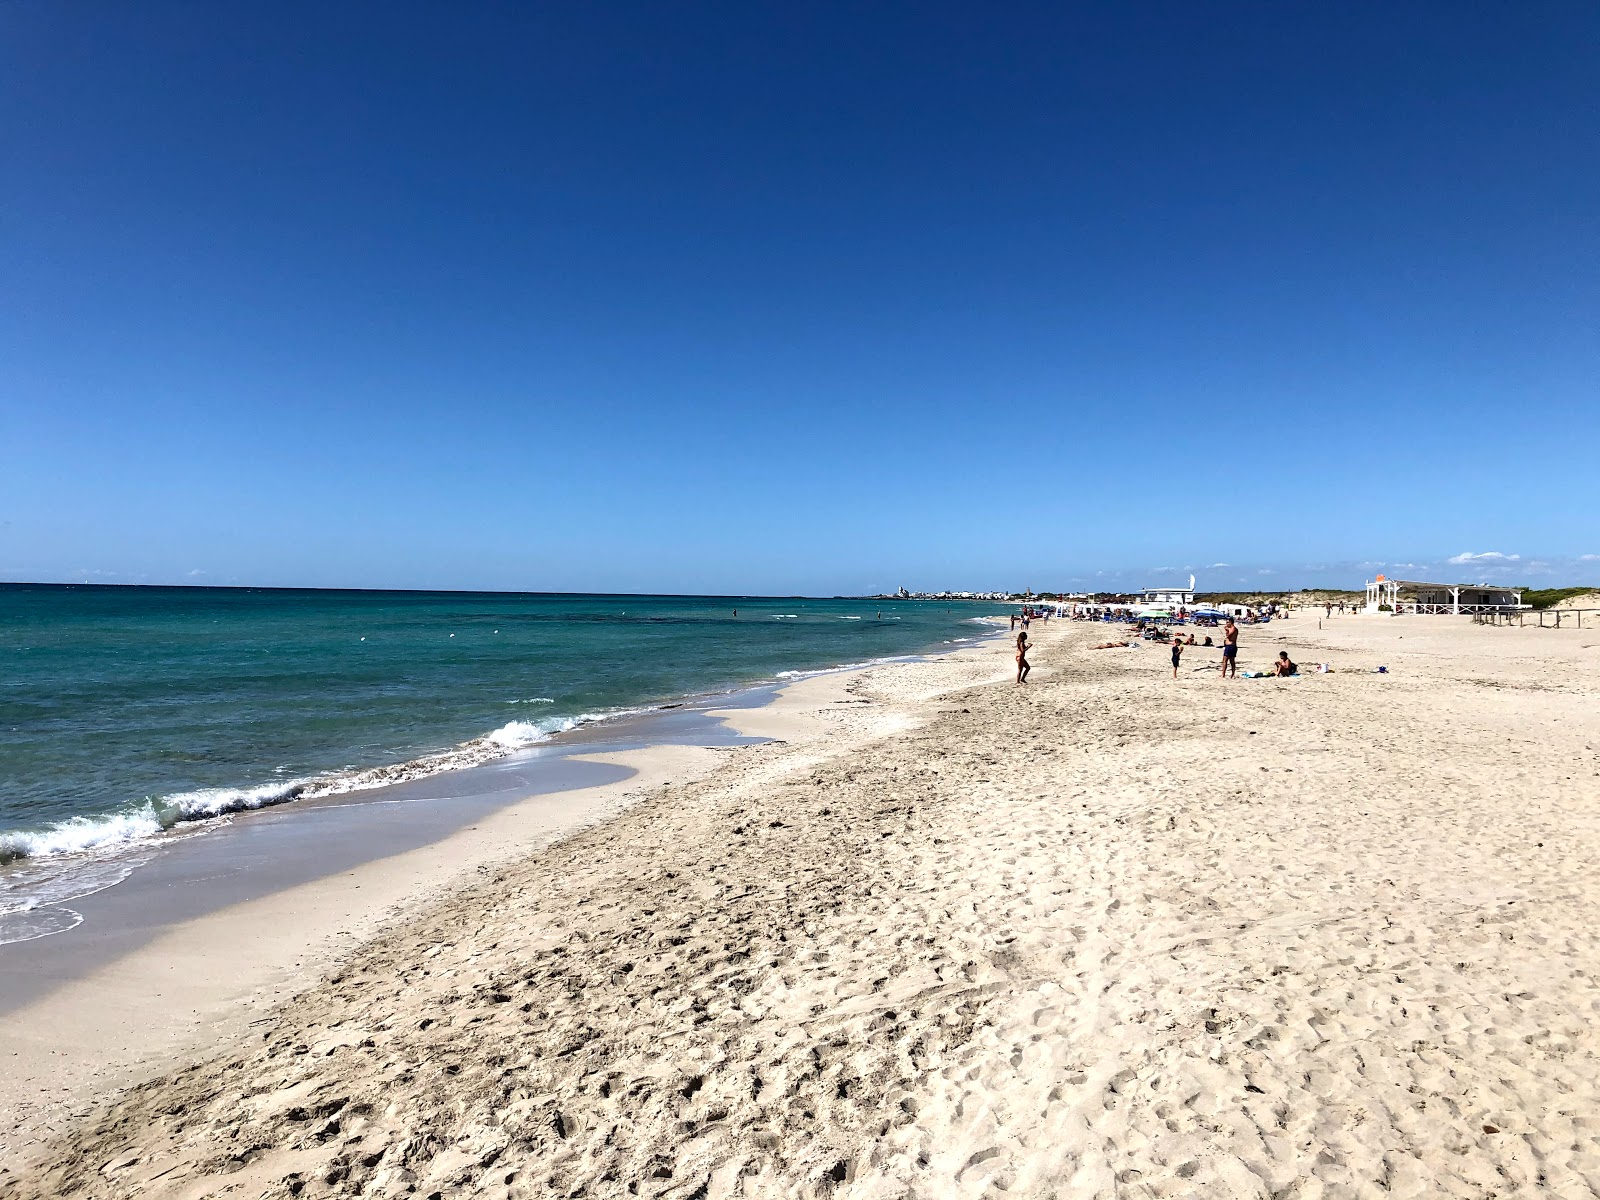 Zdjęcie Fontanelle beach - popularne miejsce wśród znawców relaksu